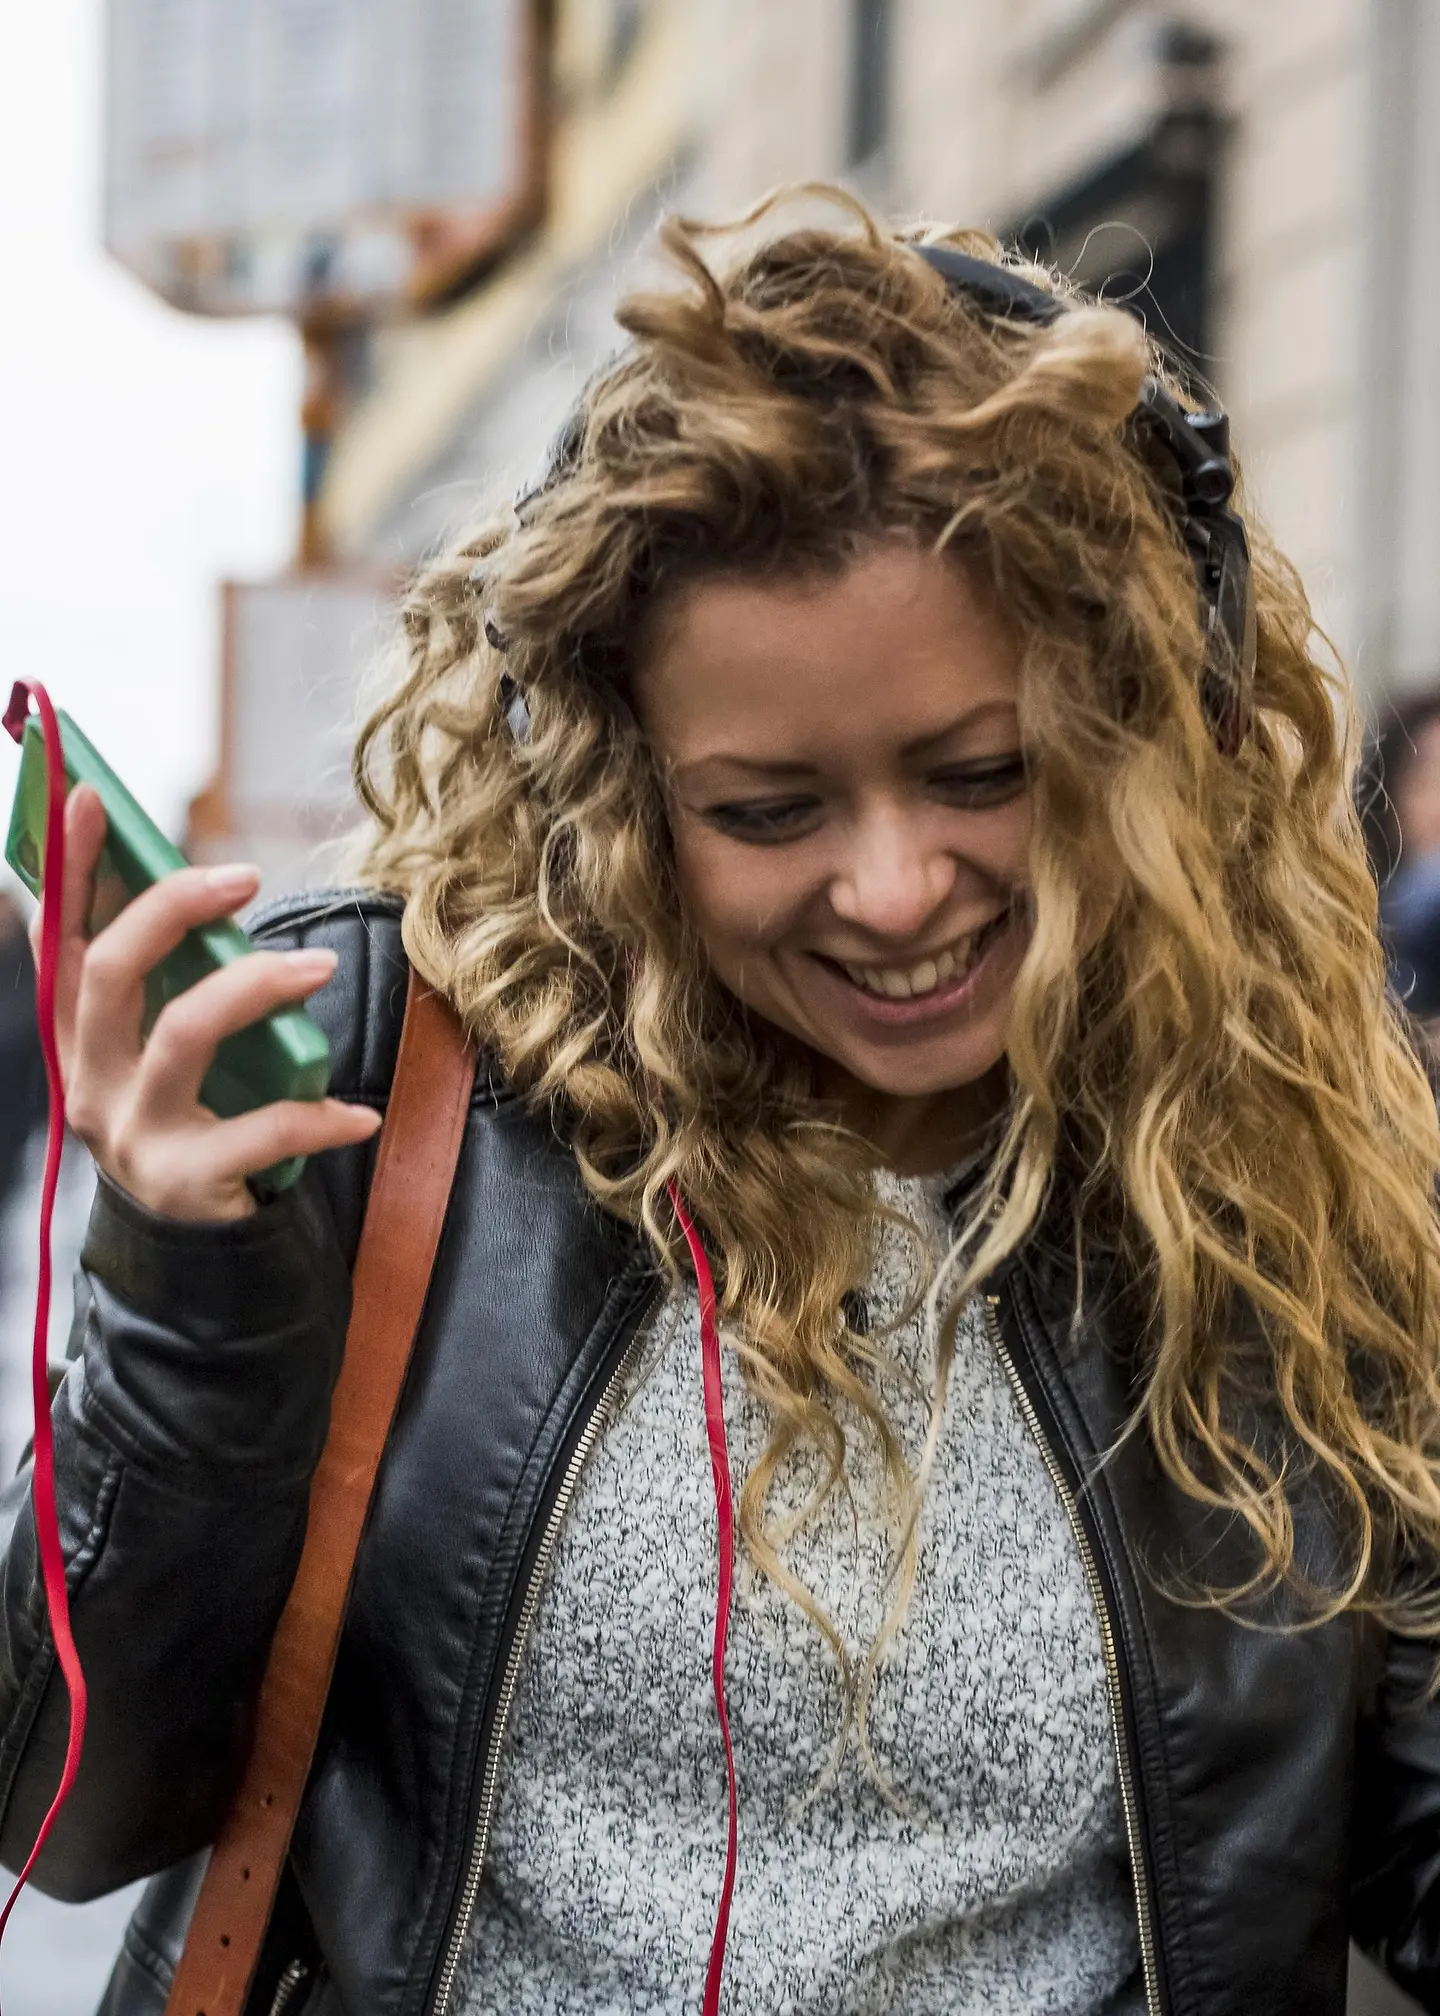 Una joven camina por la calle riendo y escuchando música en su móvil.